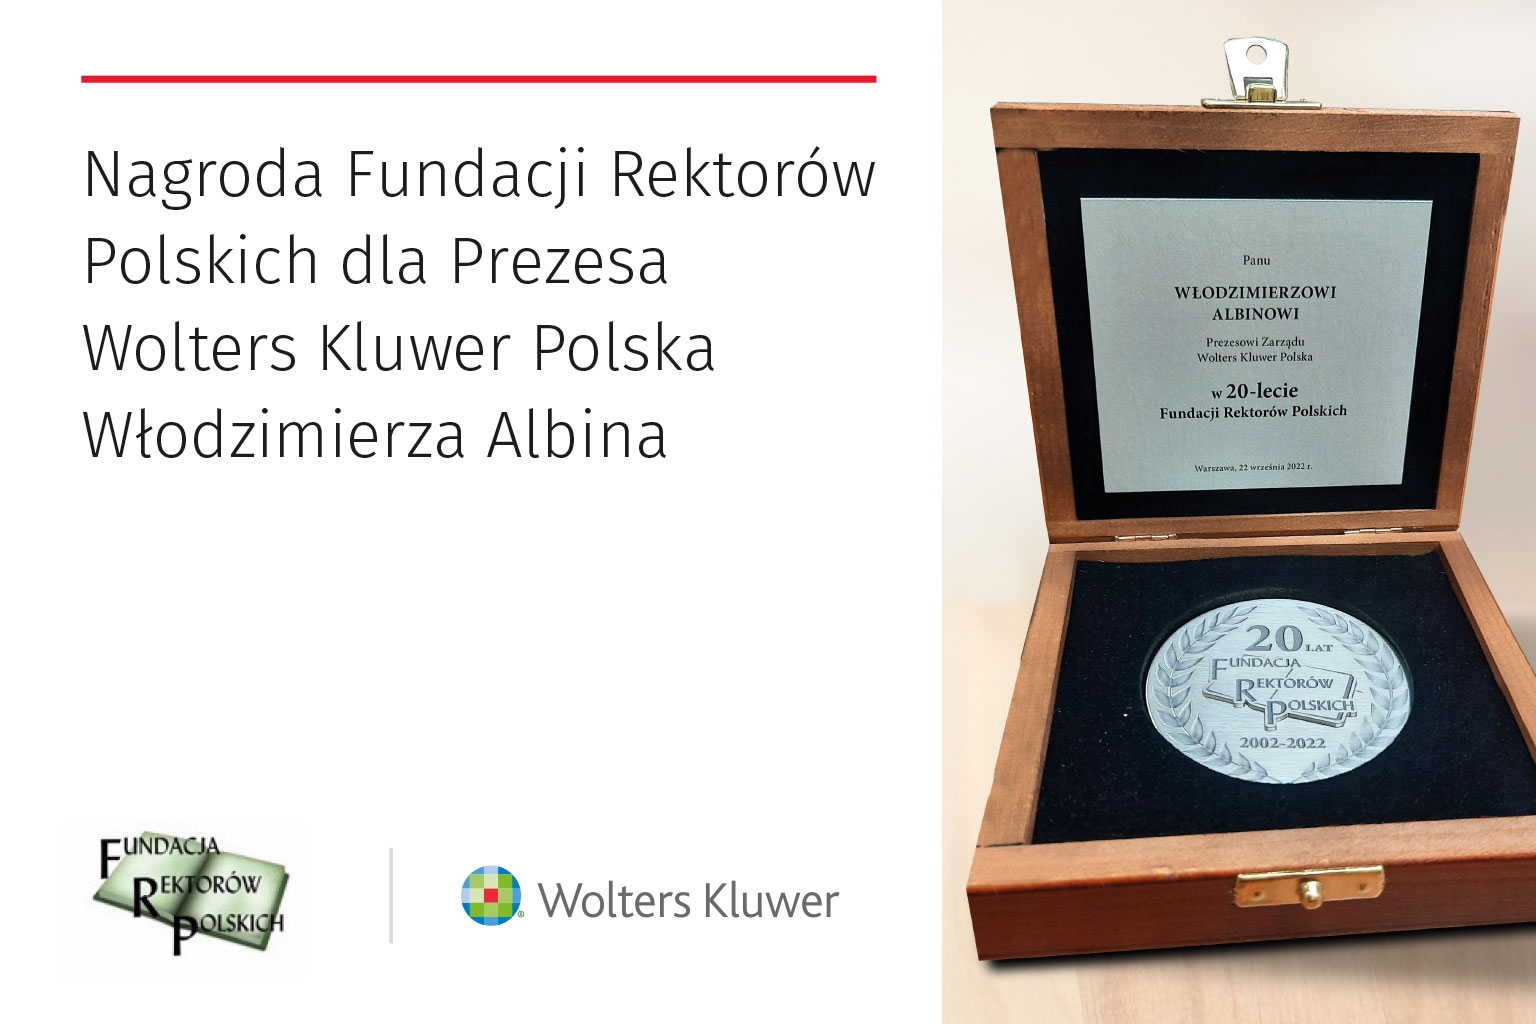 Włodzimierz Albin wyróżniony medalem Fundacji Rektorów Polskich